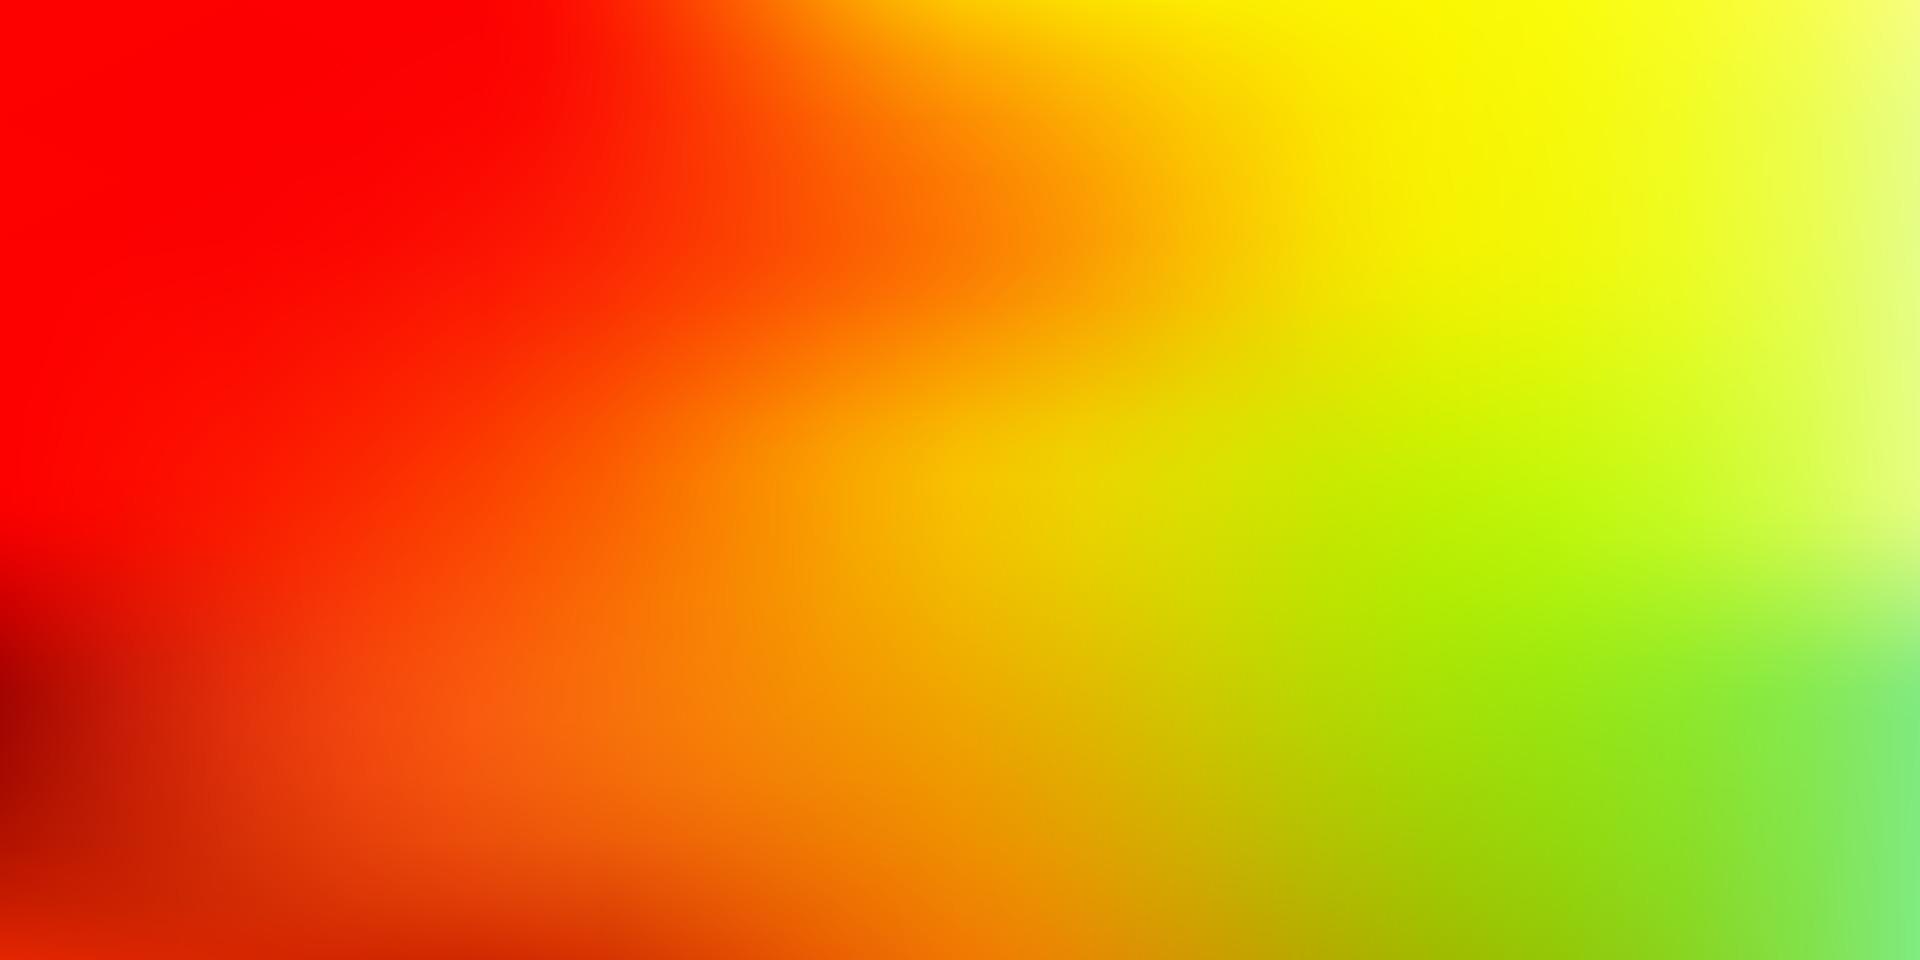 ljusrosa, gul vektor abstrakt oskärpa layout.